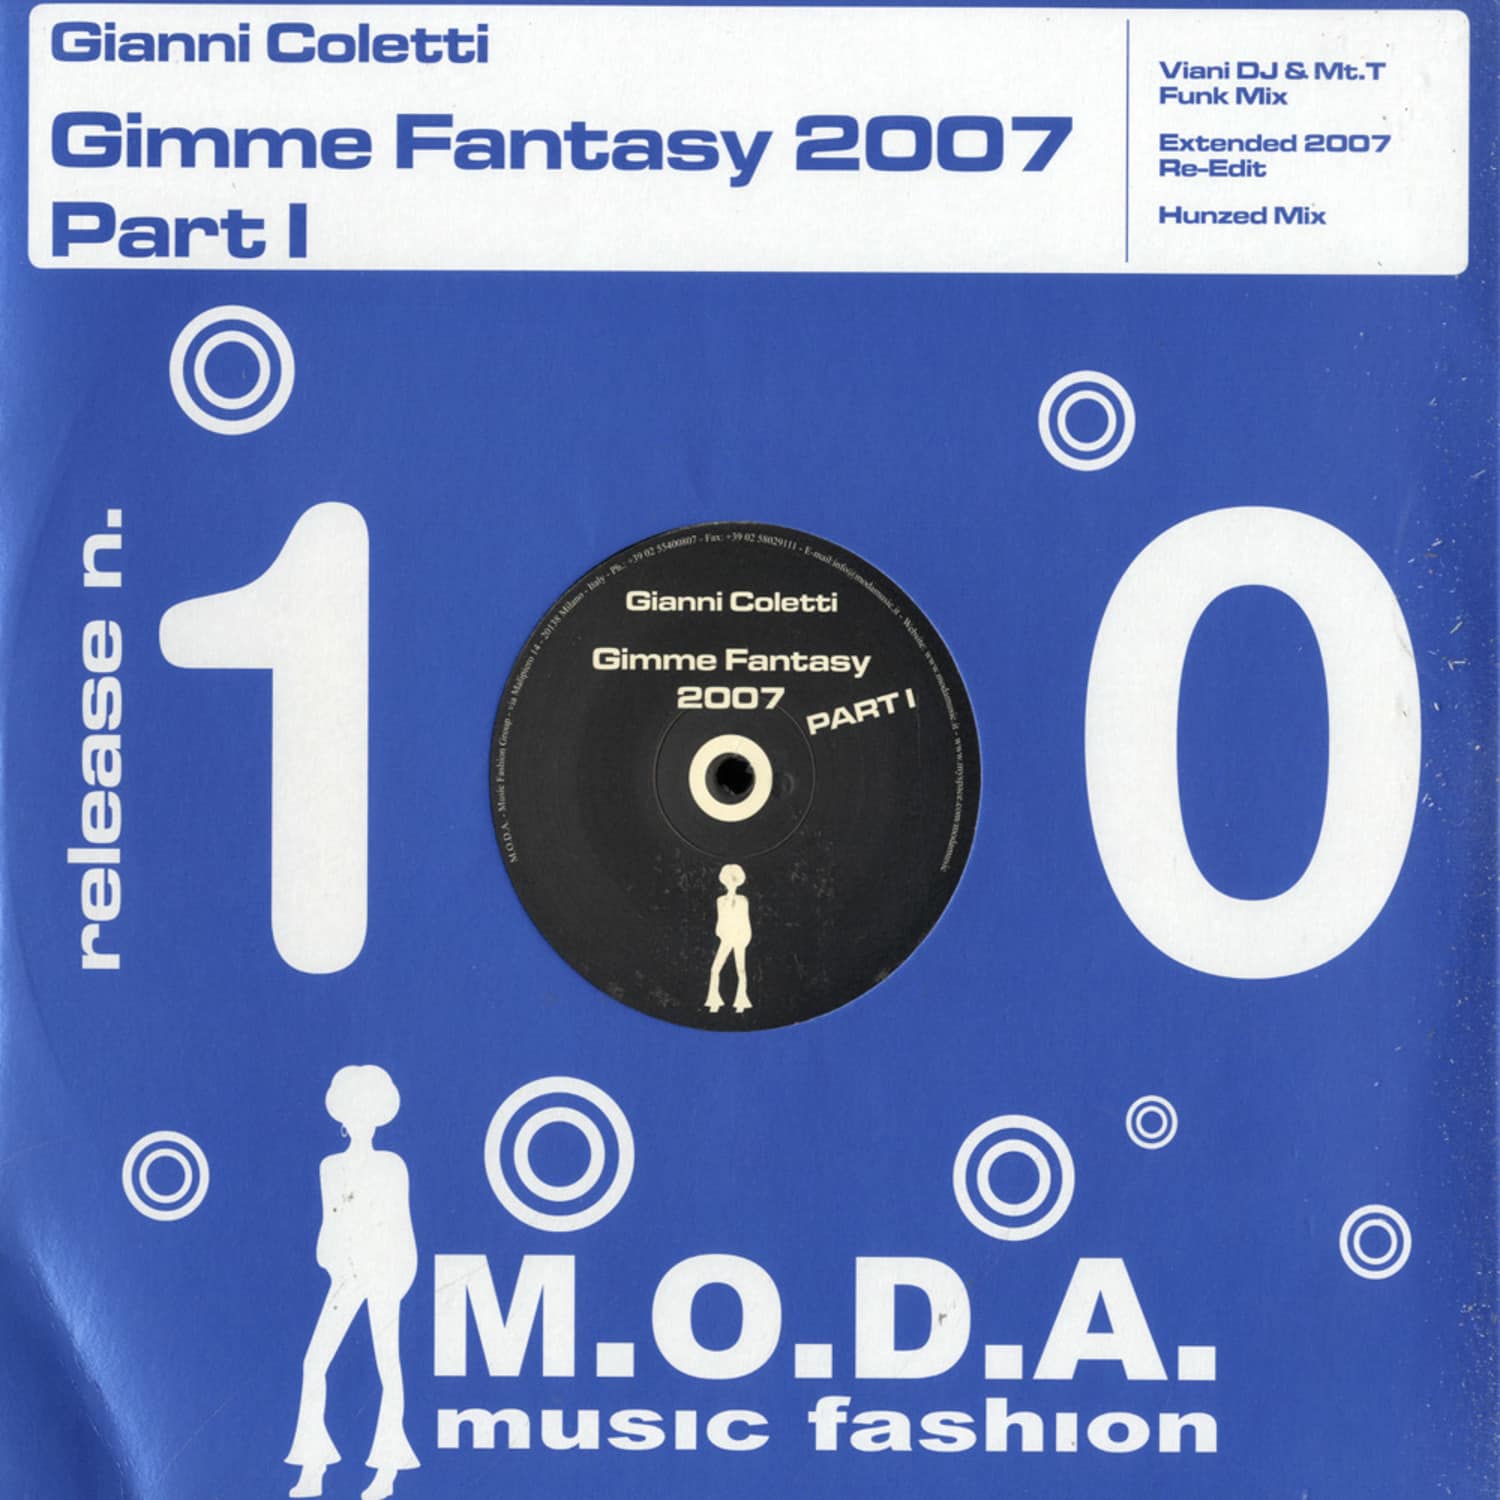 Gianni Coletti - GIMME FANTASY 2007 PART 1